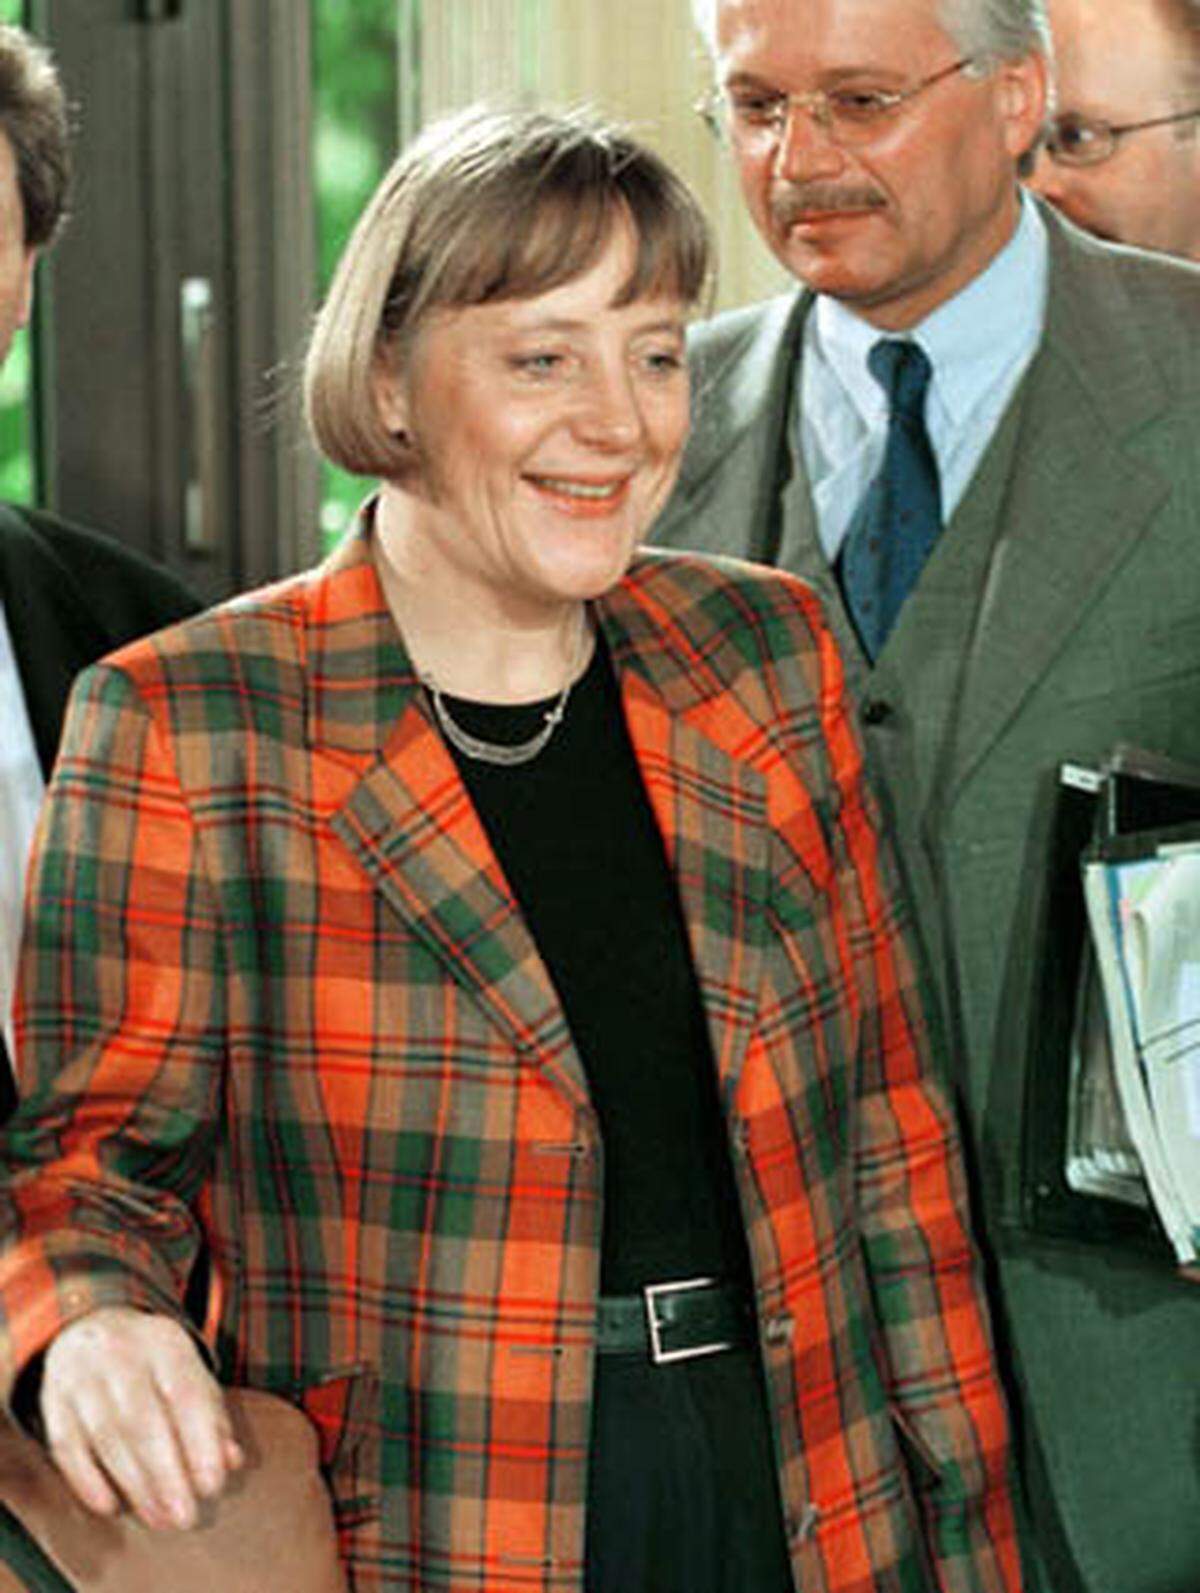 Auch die deutsche Kanzlerin Angela Merkel griff früher gern einmal zu tief in den Farb- und Mustertopf. Dank kundiger Stilberater lobt die Öffentlichkeit heutzutage aber ihren schlicht-eleganten Look.